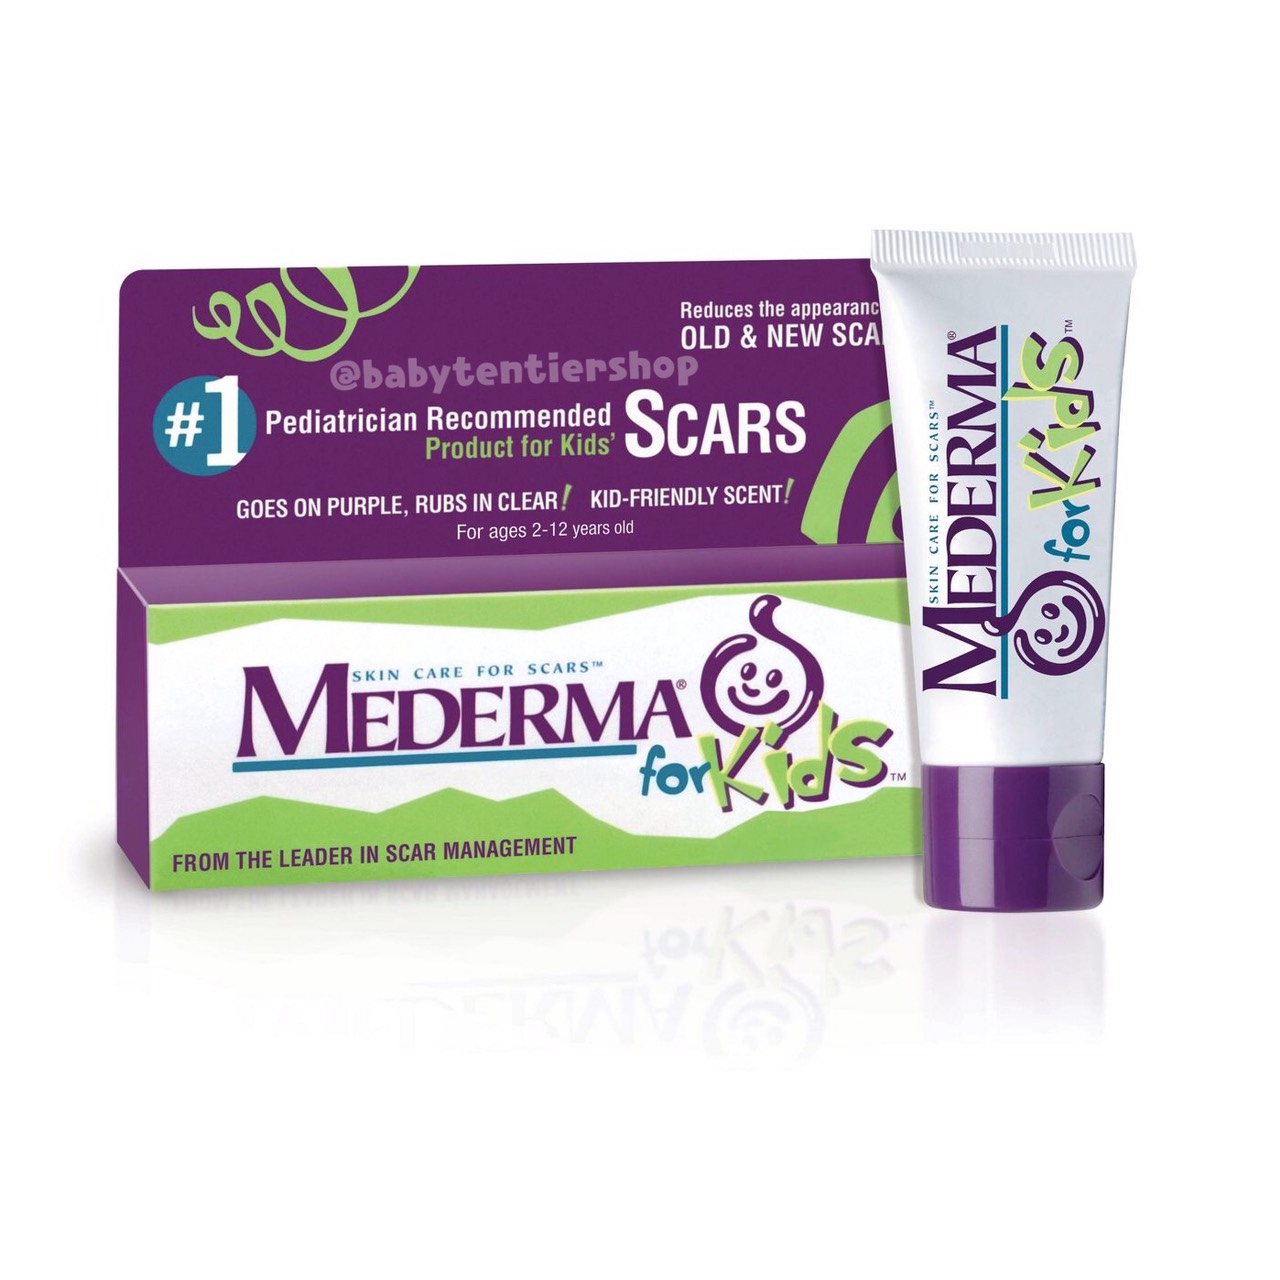 ครีมทาแผลเป็นสำหรับเด็ก Mederma, Skin Care For Scars 20g.